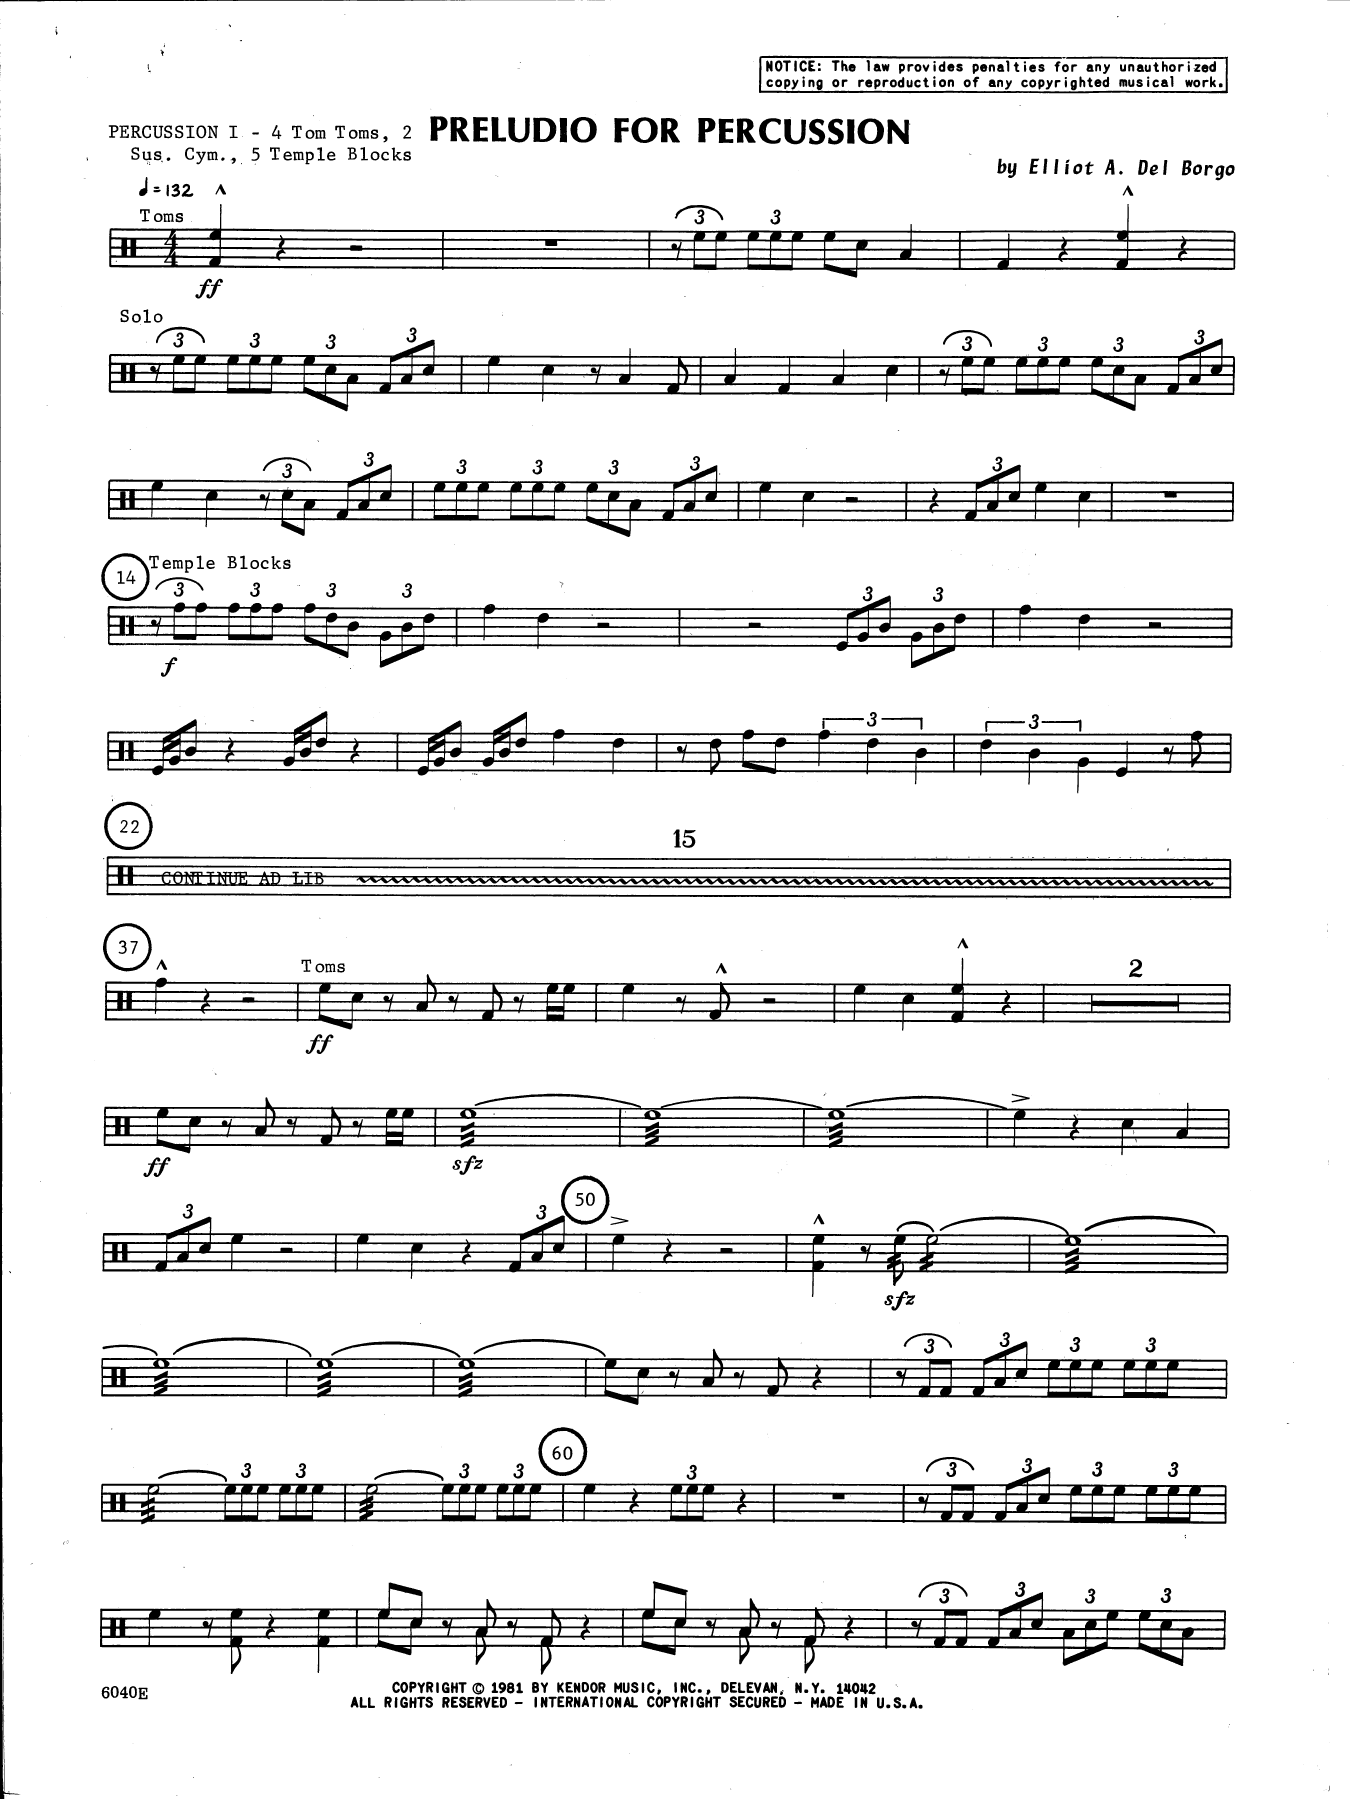 Download Elliot A. Del Borgo Preludio For Percussion - Percussion 1 Sheet Music